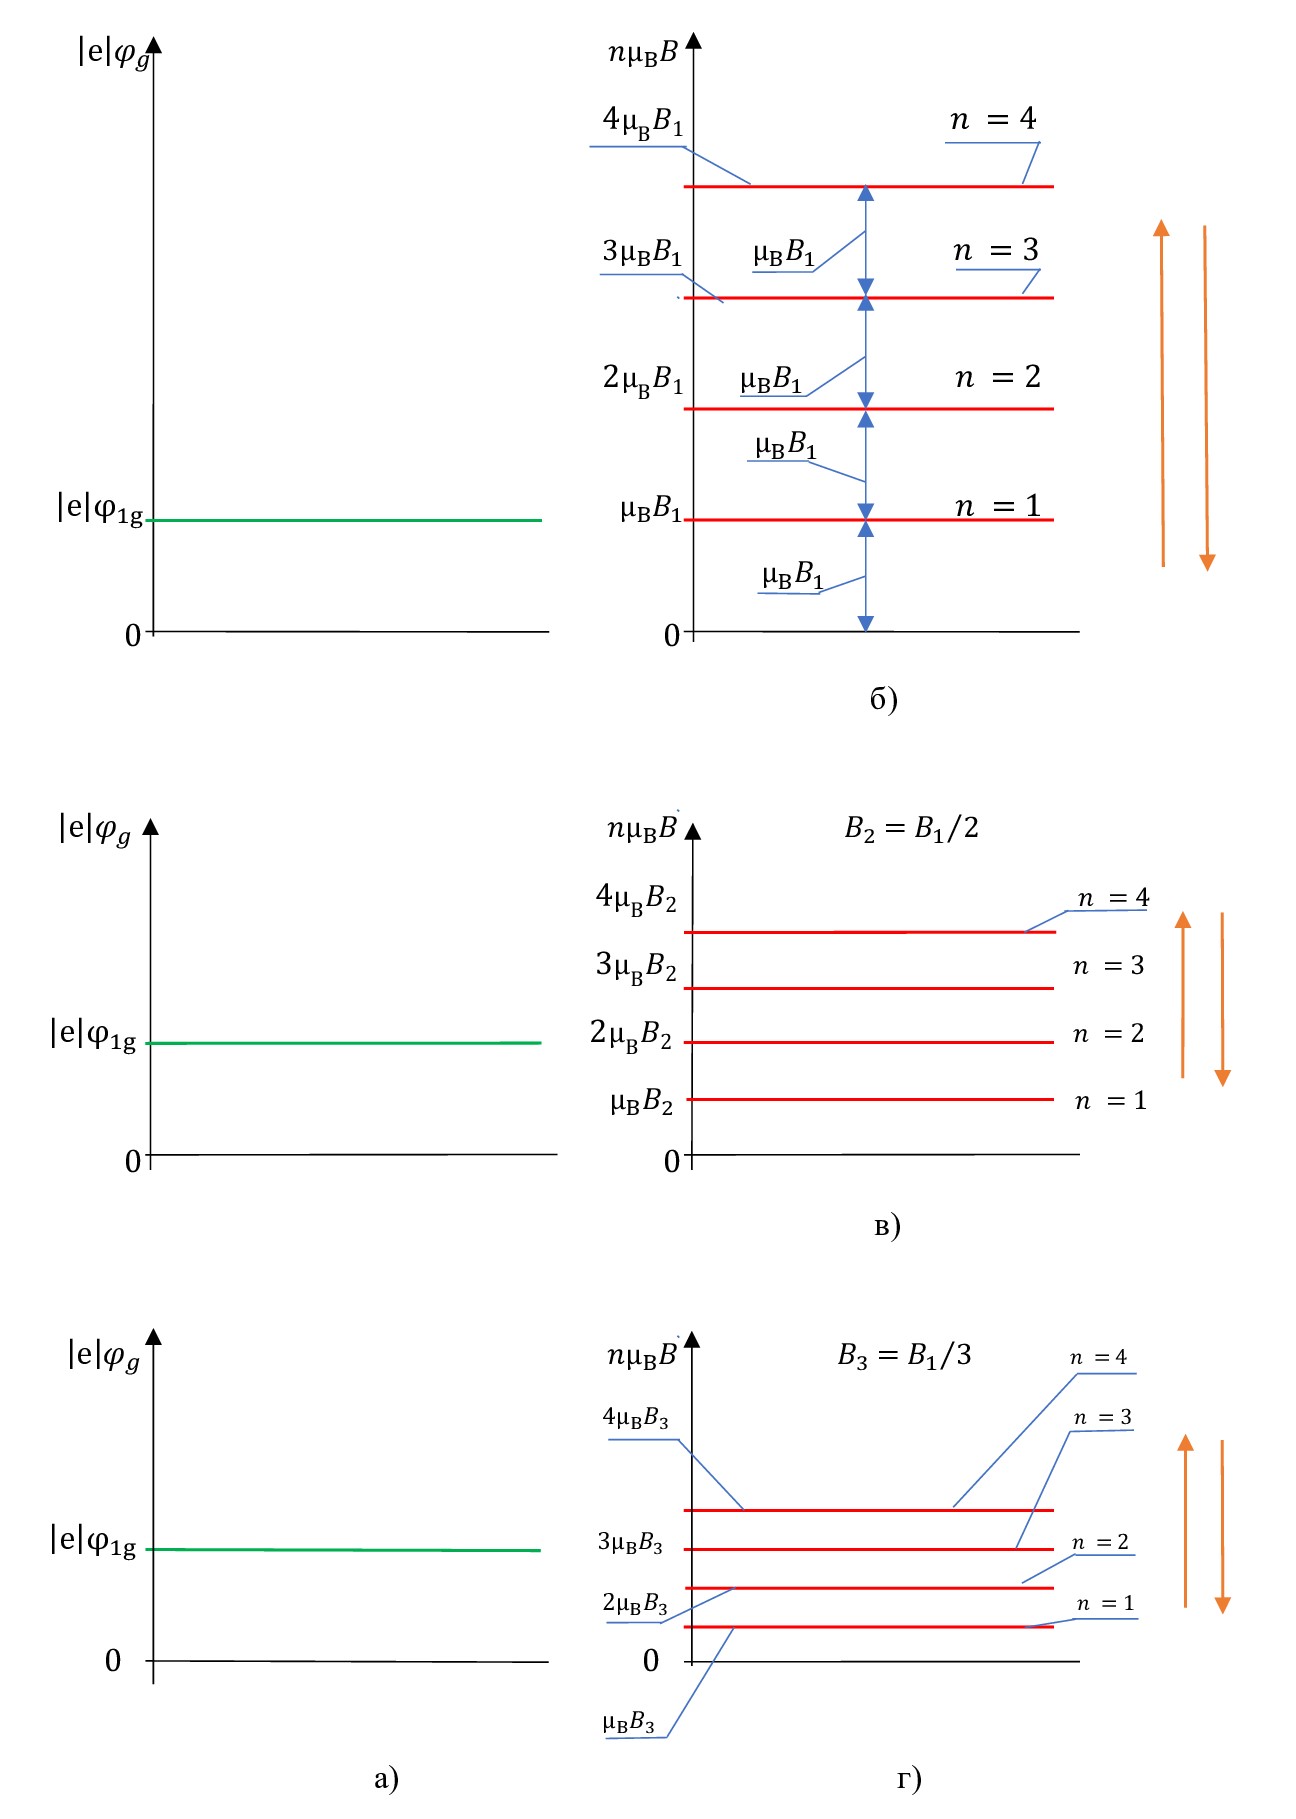 Схематично показана связь между плавным изменением индукции магнитного поля B и постоянным значением потенциала φ1g электростатического поля затвора-подложки в зоне проводимости, умноженным на абсолютную величину заряда электрона |e|:а - значение потенциала φ1g электростатического поля затвора-подложки в зоне проводимости, умноженного на абсолютную величину заряда электрона |e|; б, в, г - изменение индукции магнитного поля B